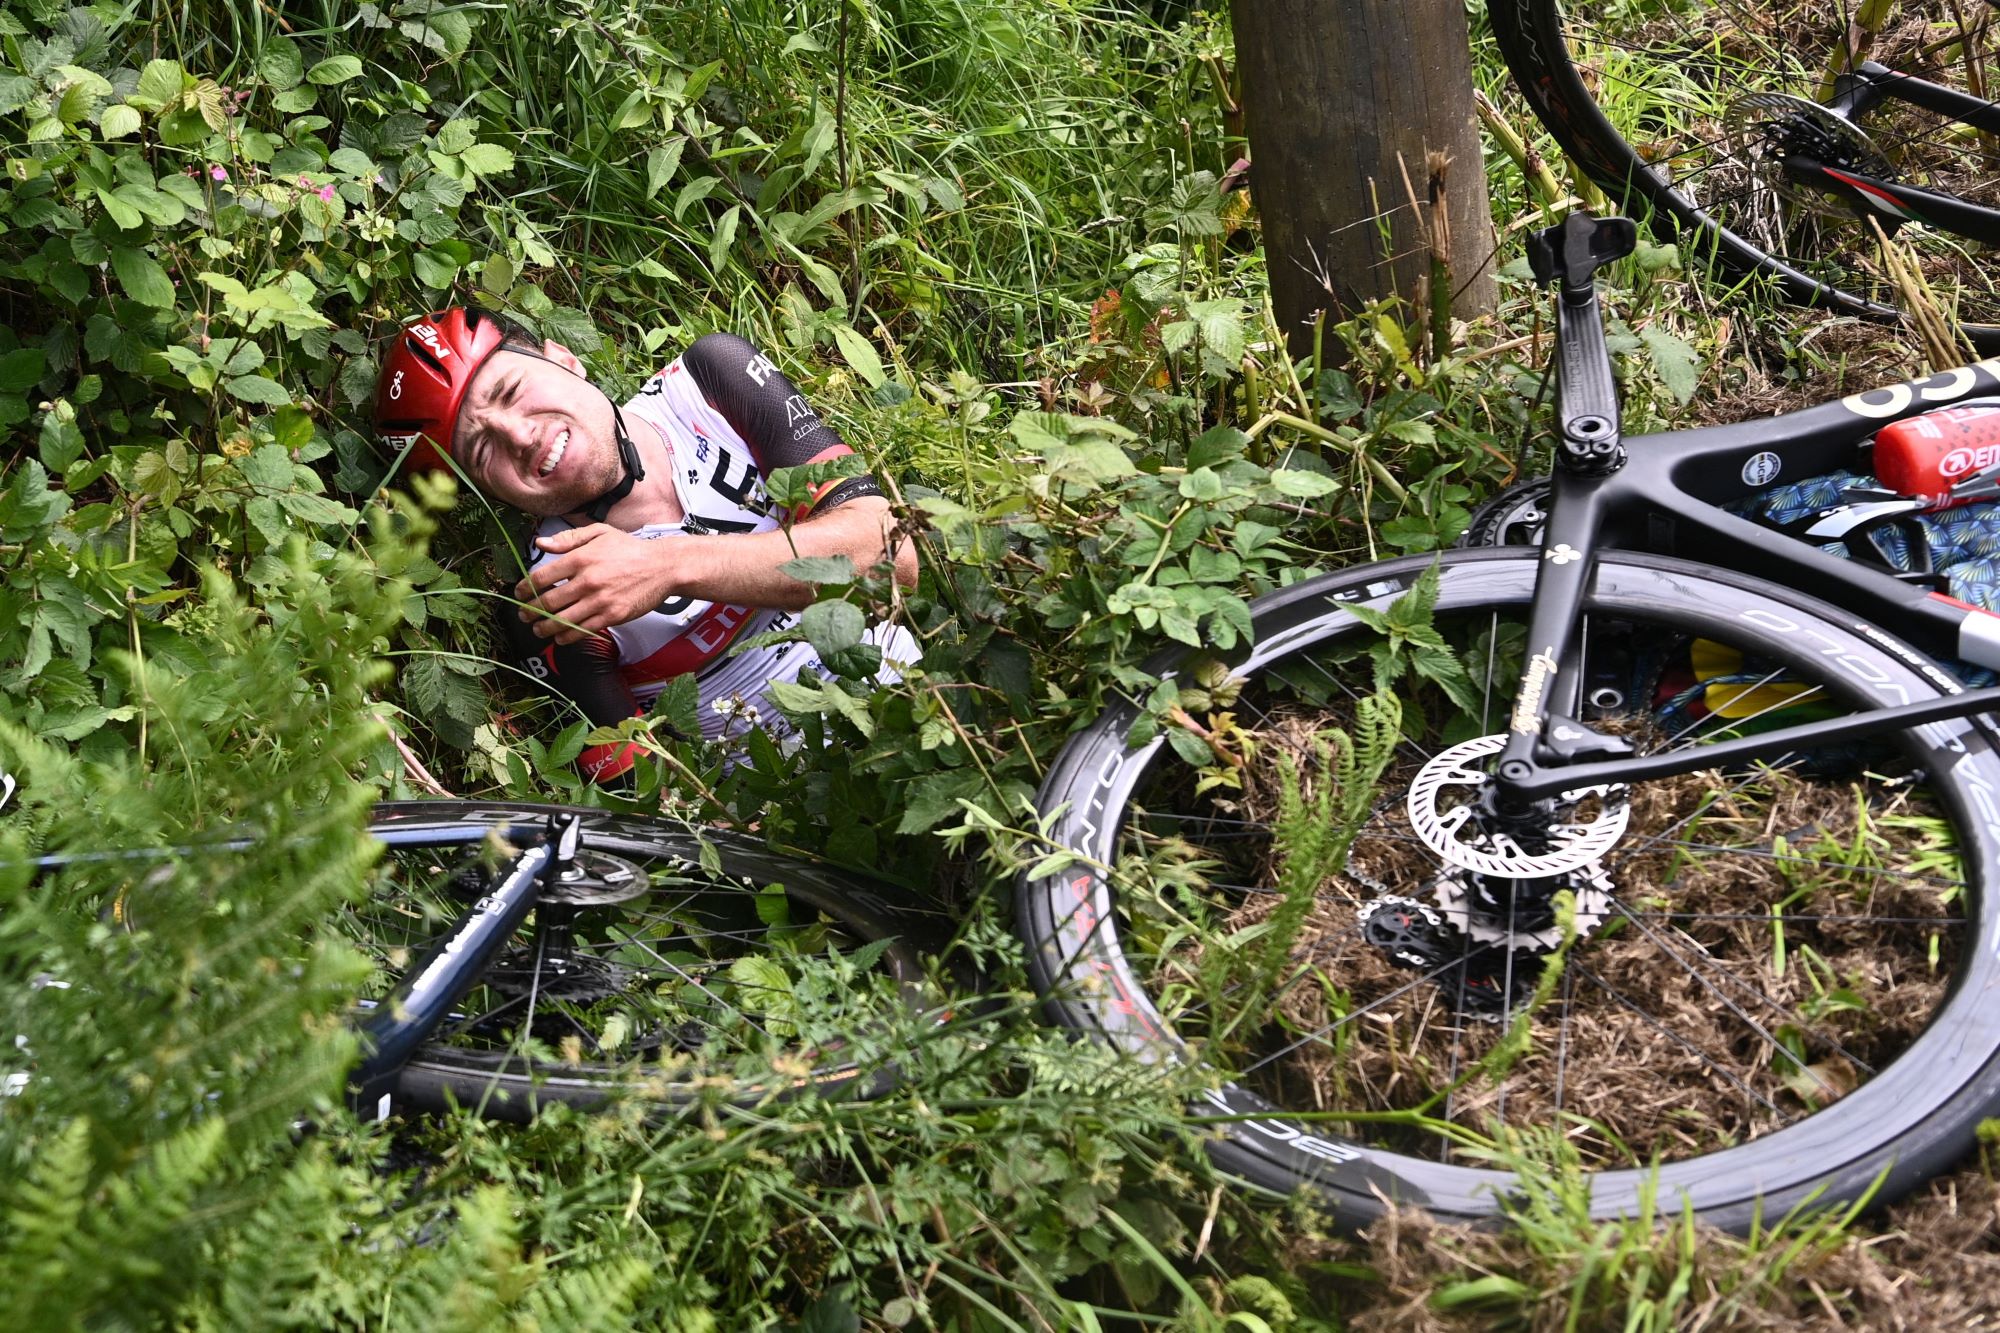 A Tour de France bike crash during a cycling race